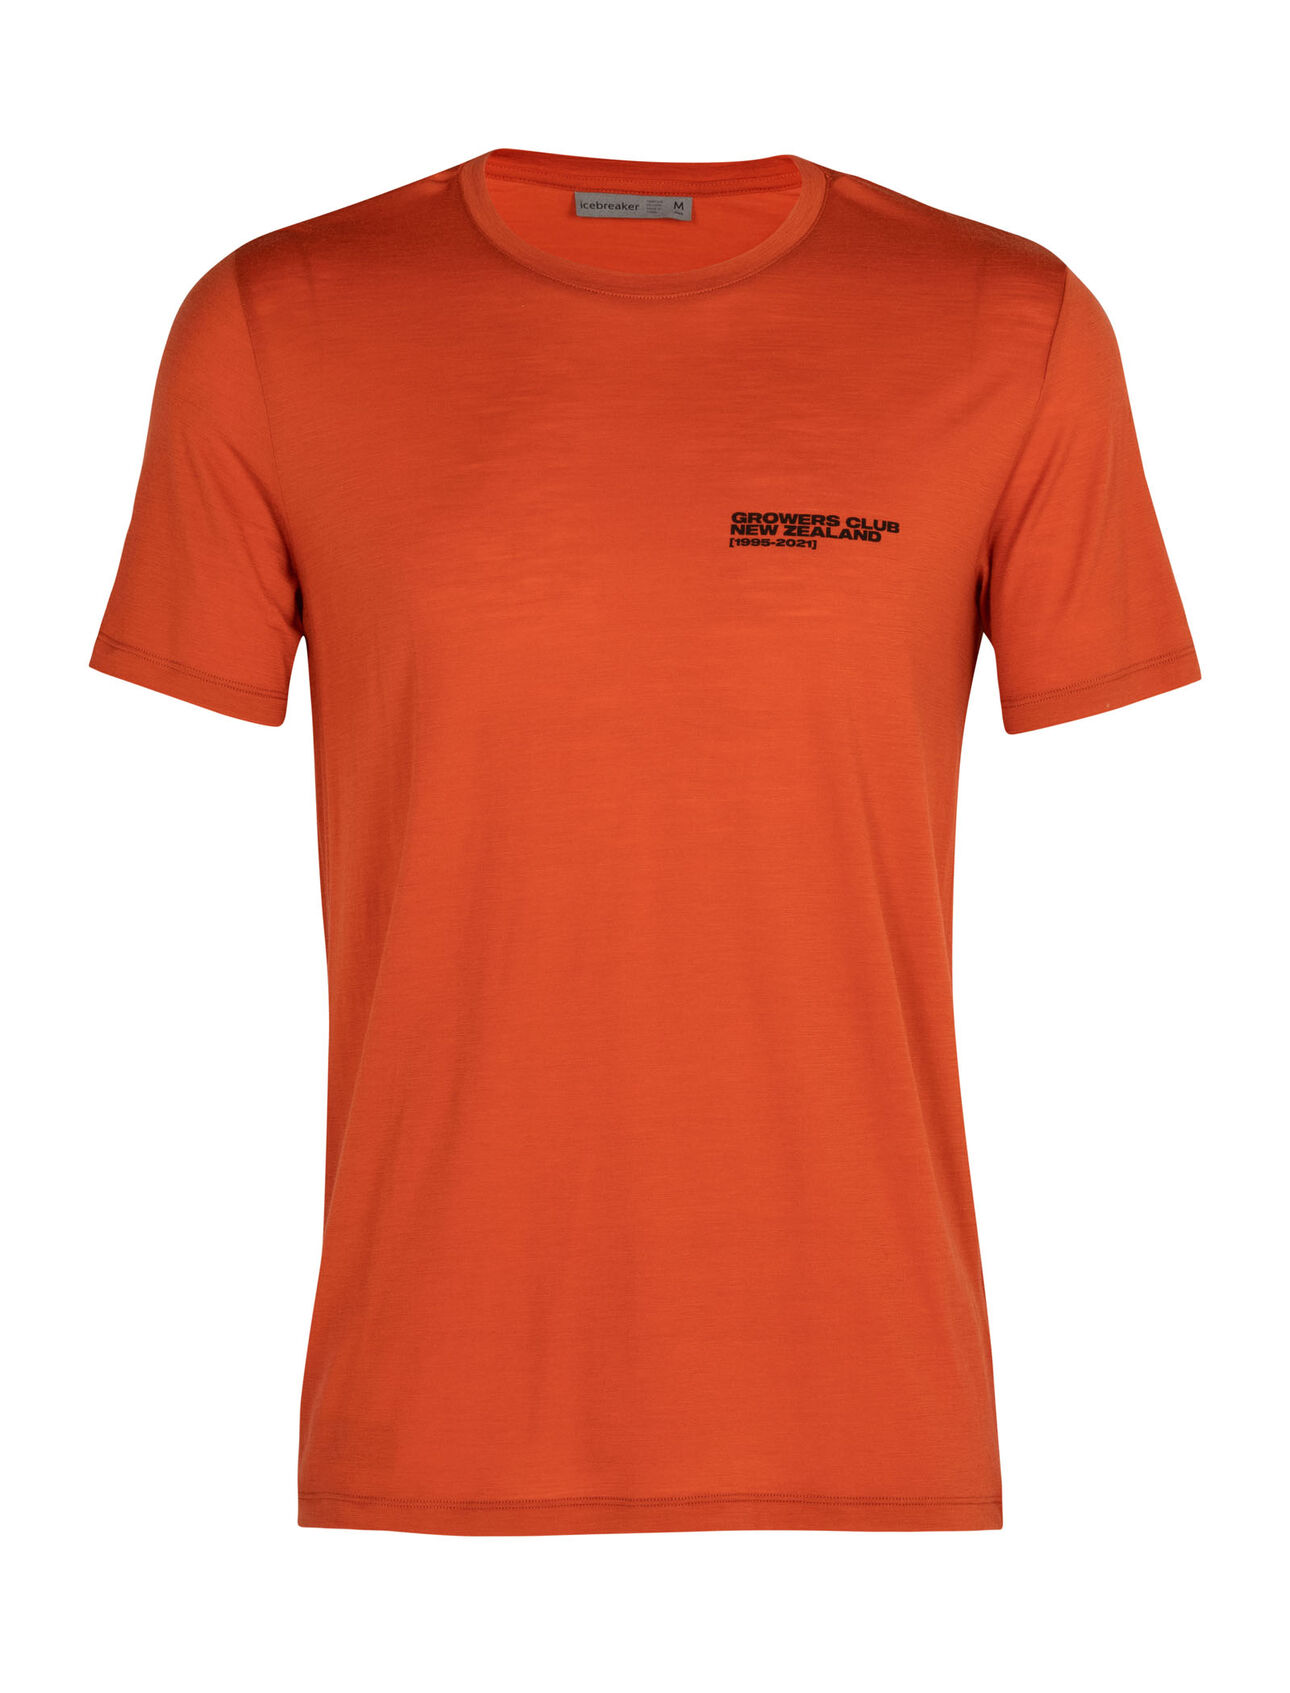 Merino Tech Lite Short Sleeve Crewe T-Shirt Growers Club